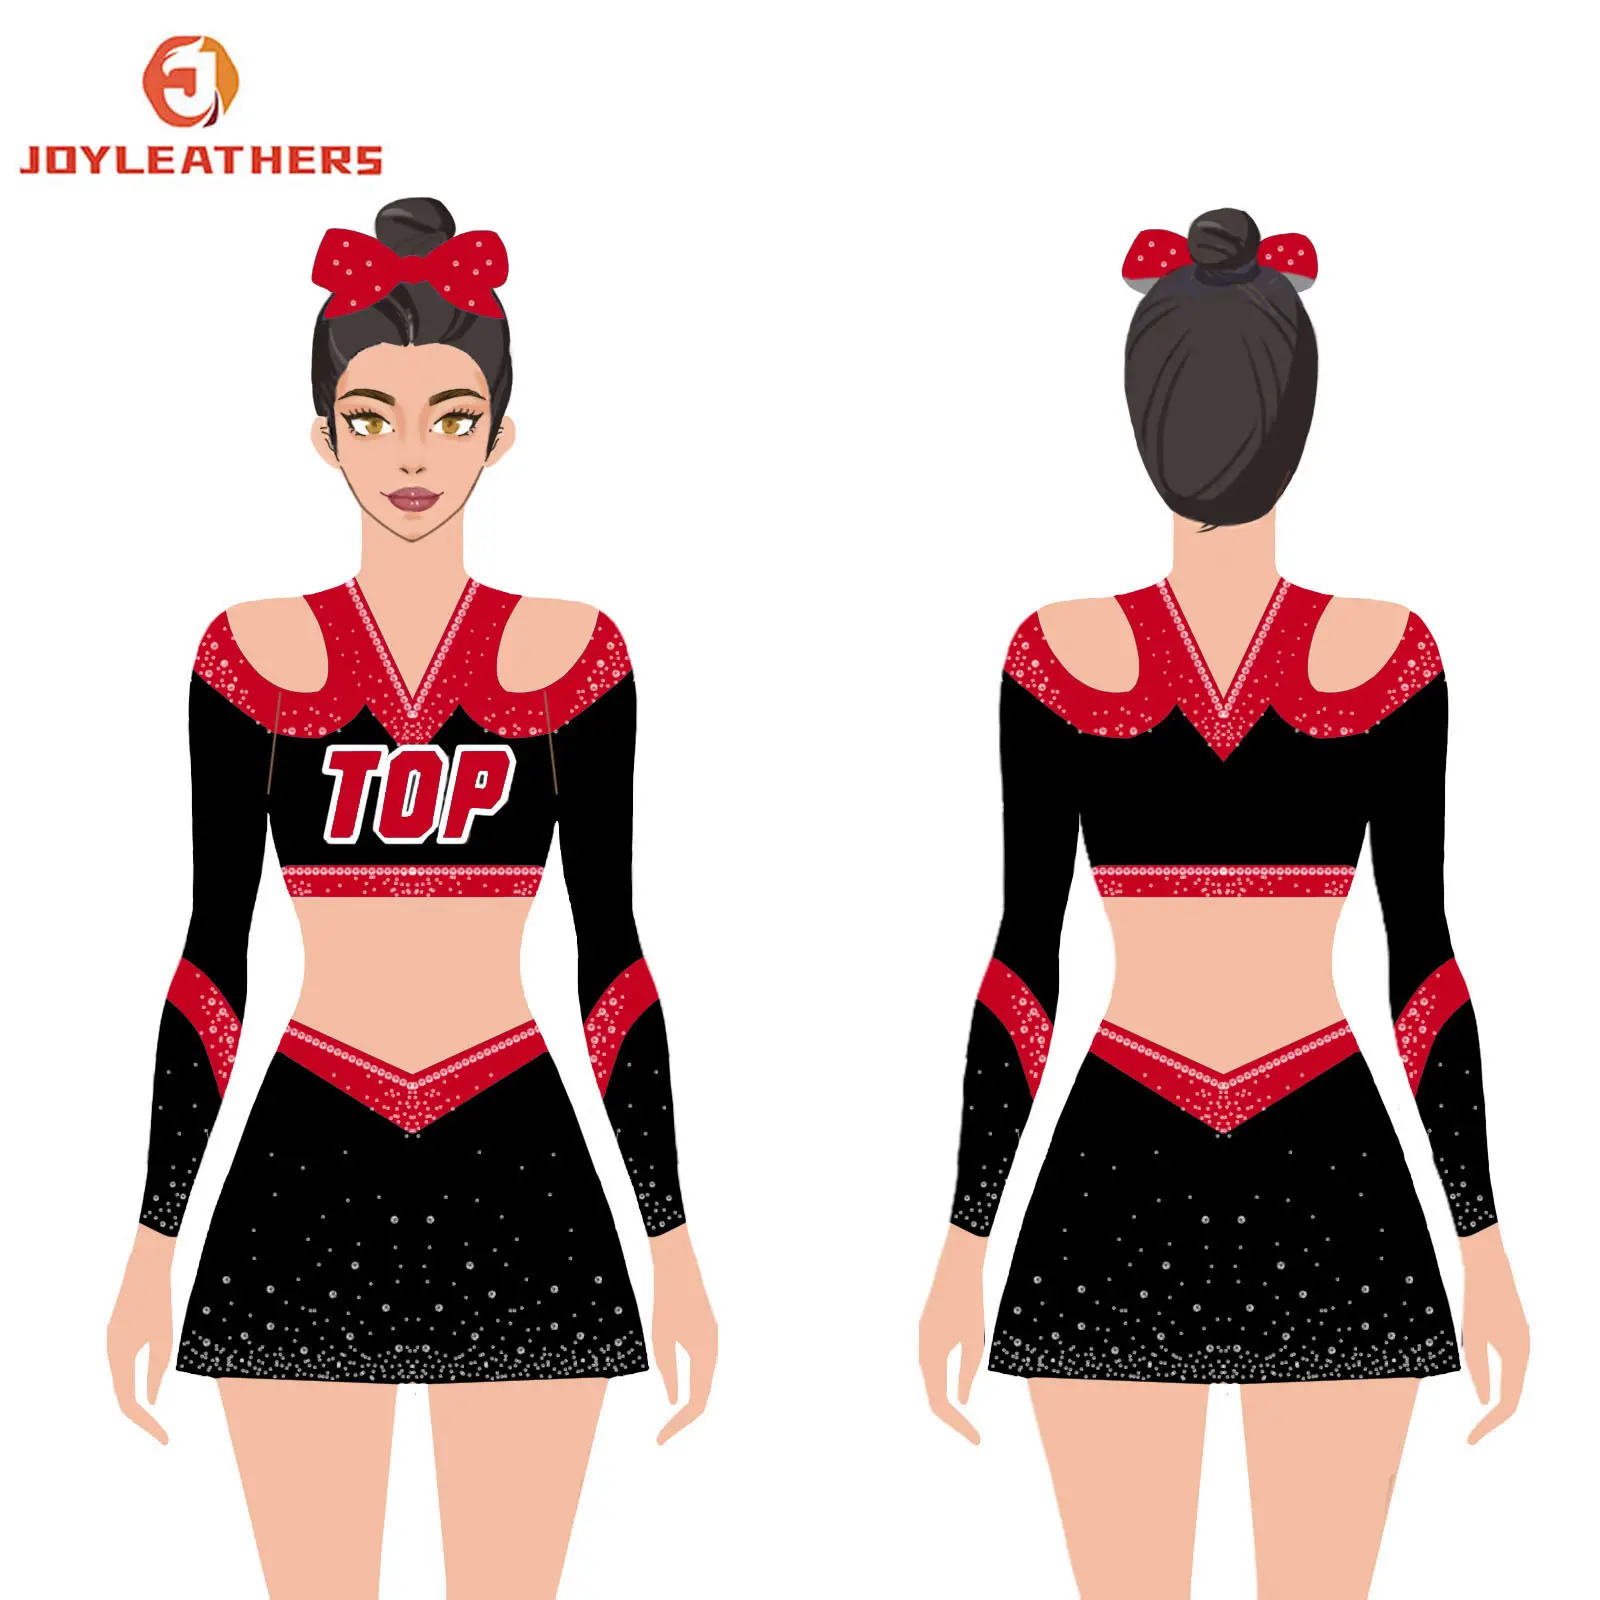 Neuzugänge Cheerleaderuniform Teen Cheerleader-Kostüme mit Strasssteinen